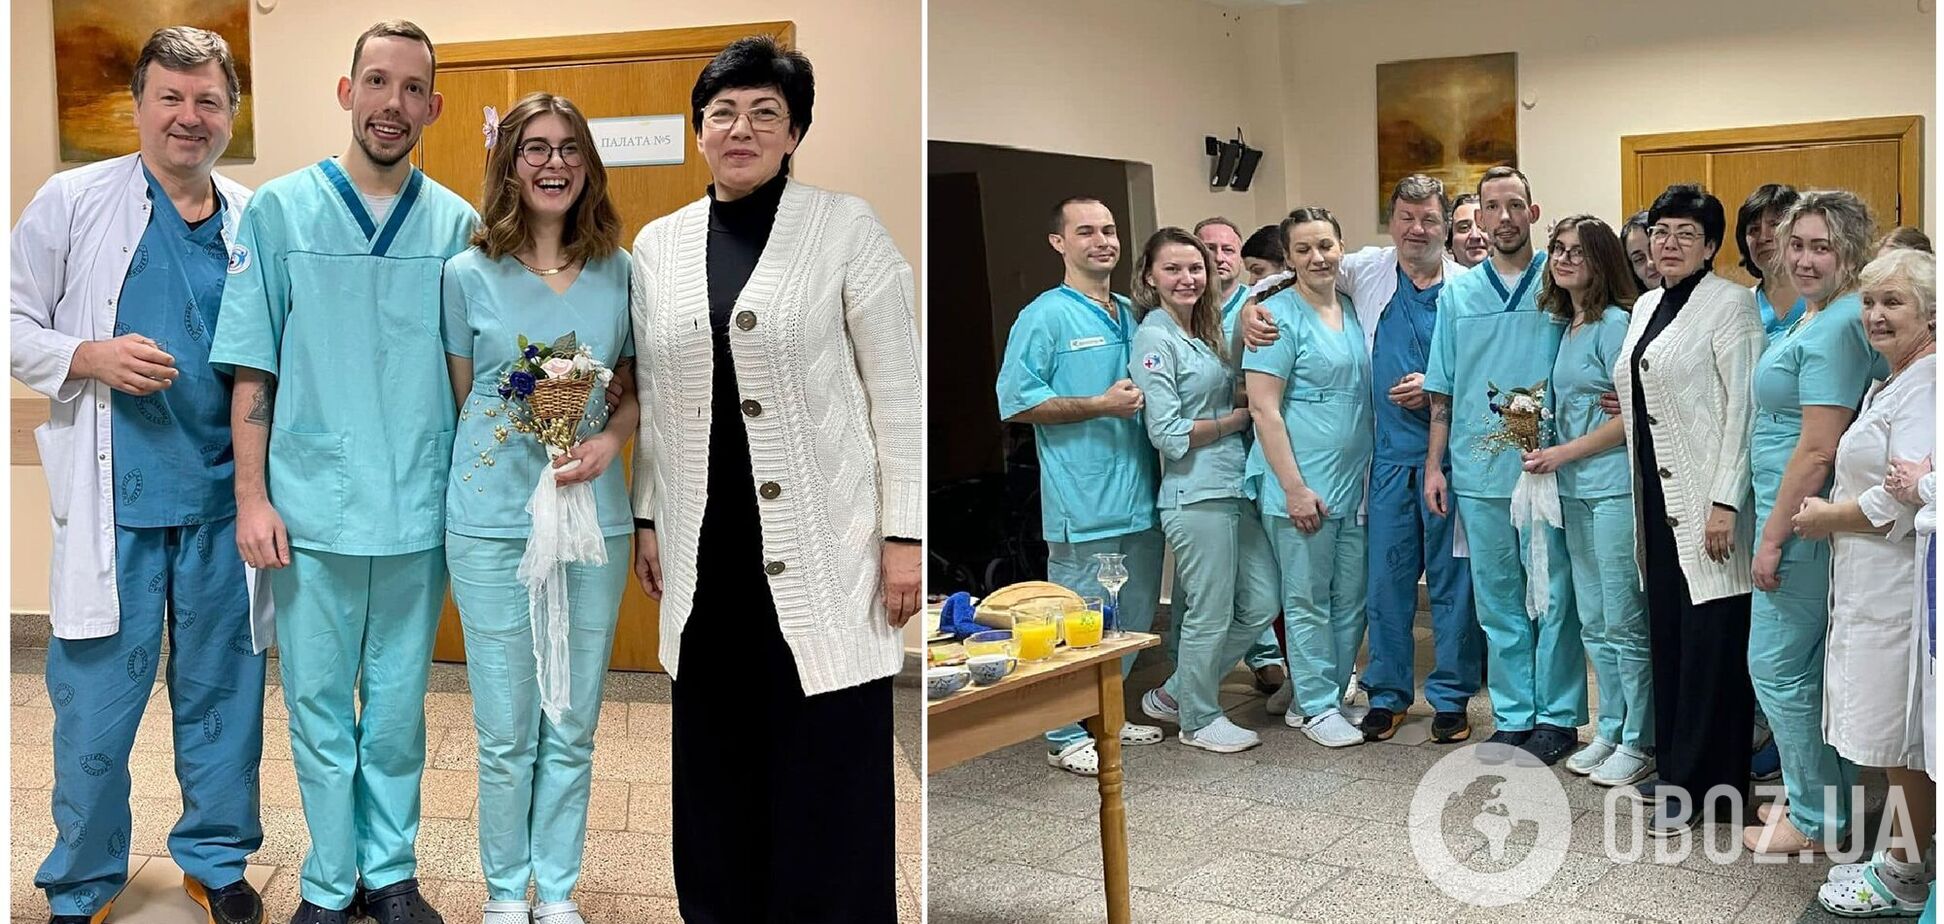 Жизнь продолжается! Медсестра и волонтер женились на пятый день войны в Украине. Фото и видео